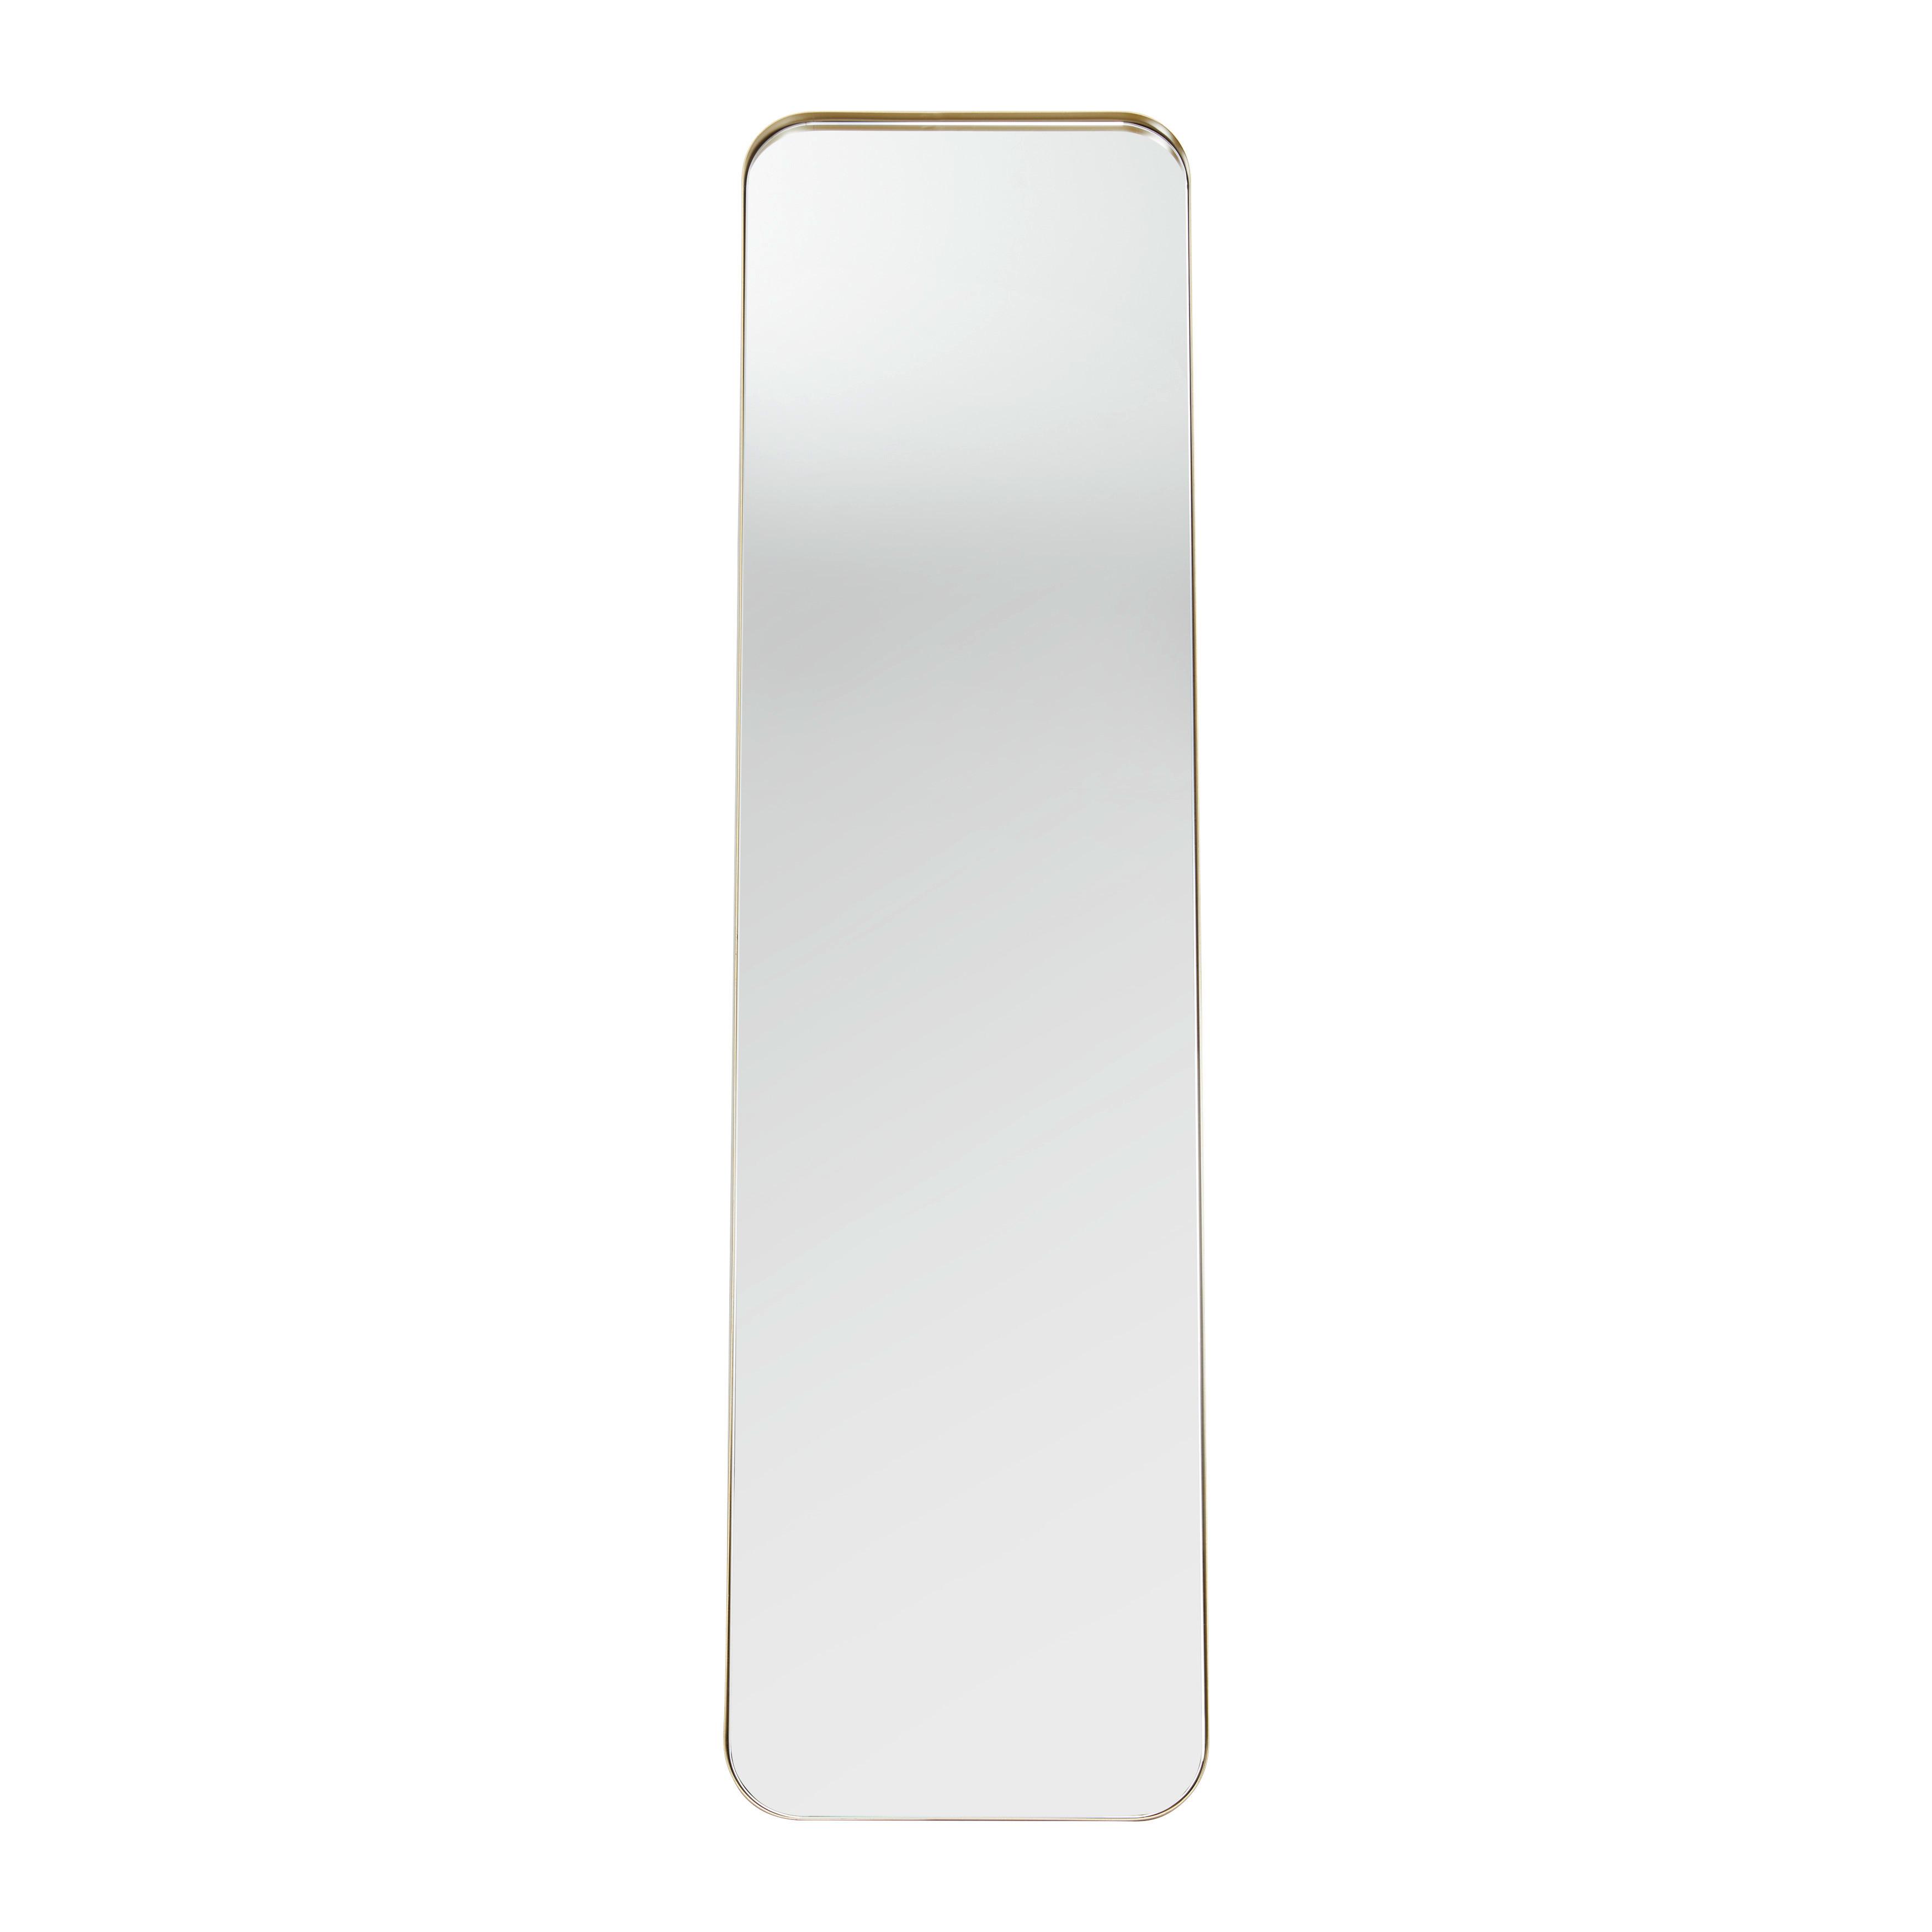 Spiegel "Liv", gold - Goldfarben, MODERN, Glas/Metall (41/154/68,5cm) - Bessagi Home